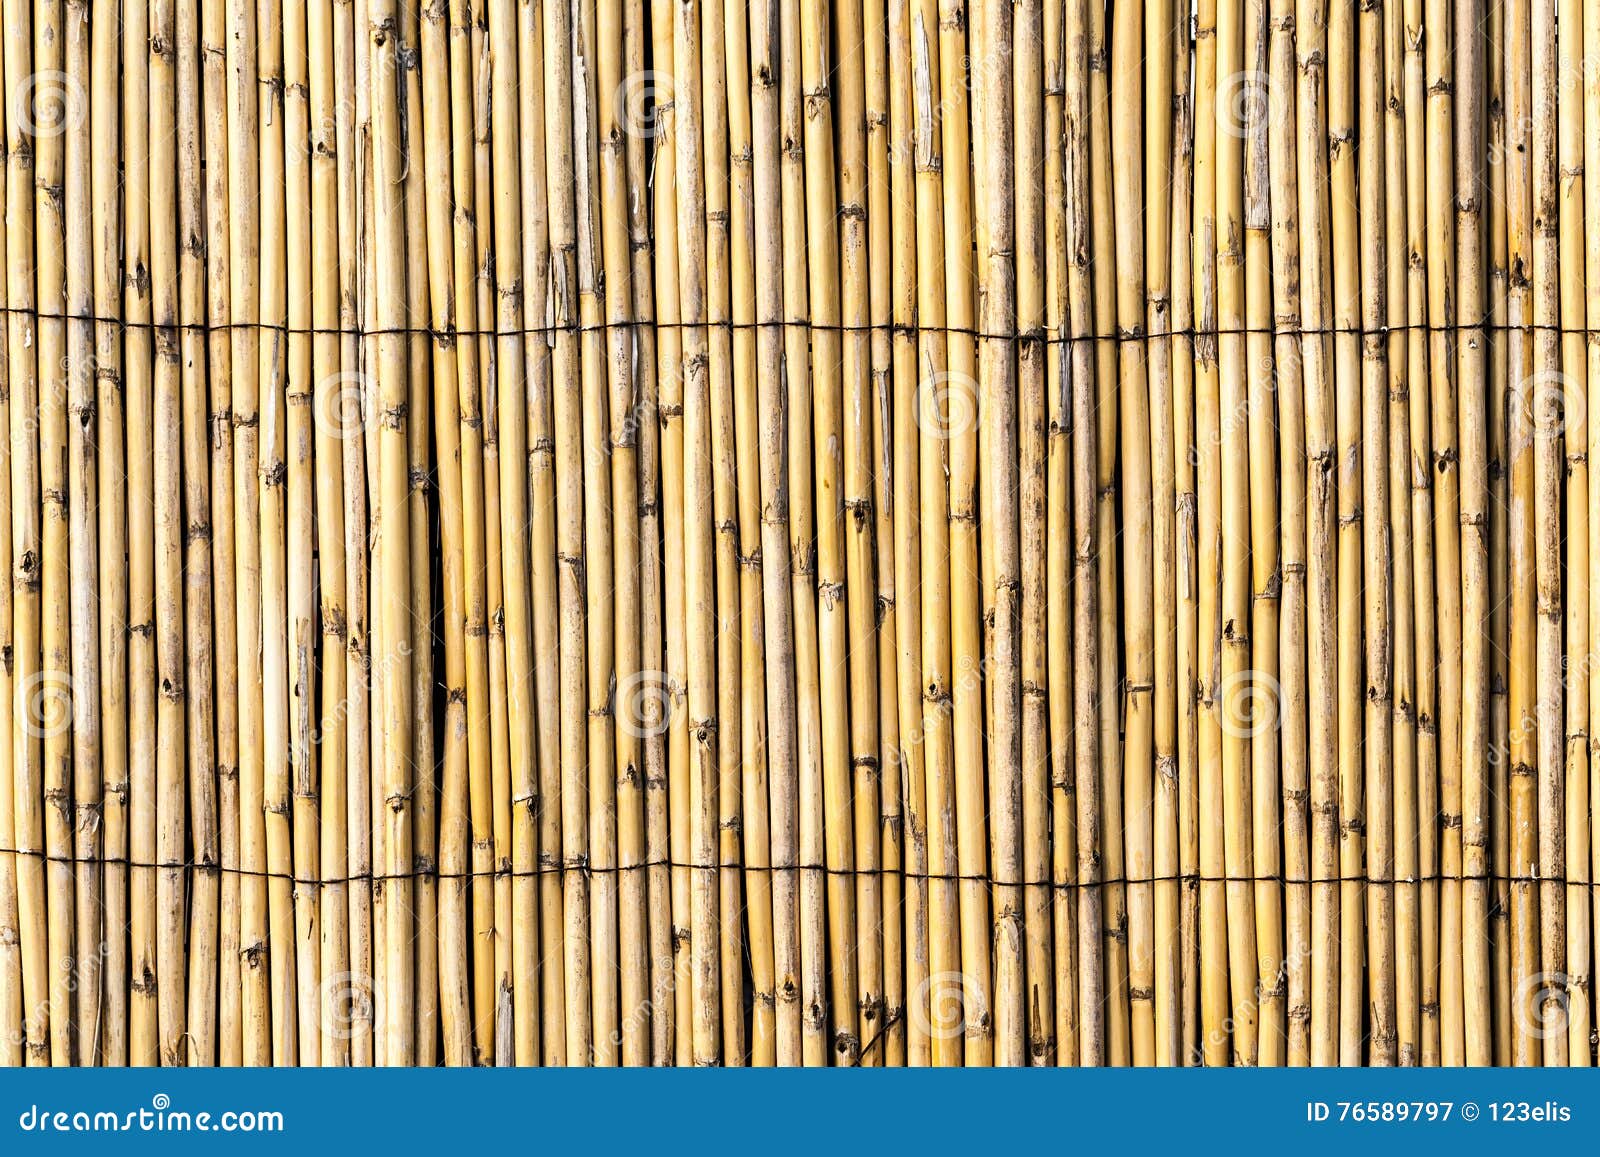 bambu fence texture